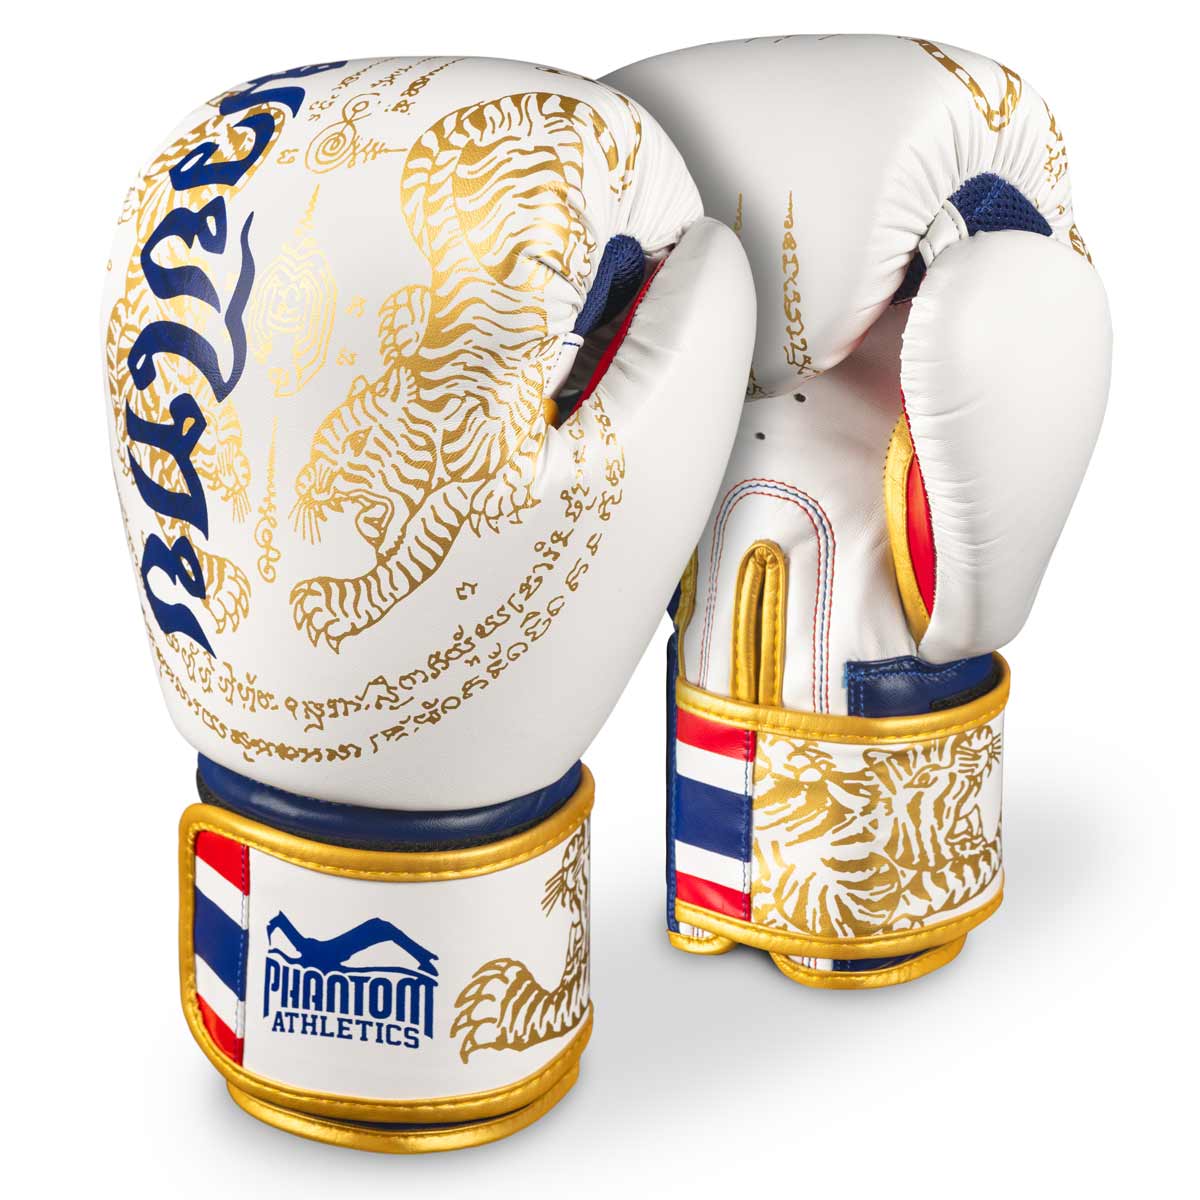 Phantom Muay Thai bokserske rukavice sa tajlandskim printom u ograničenom izdanju bijela/zlatna/plava/crvena.